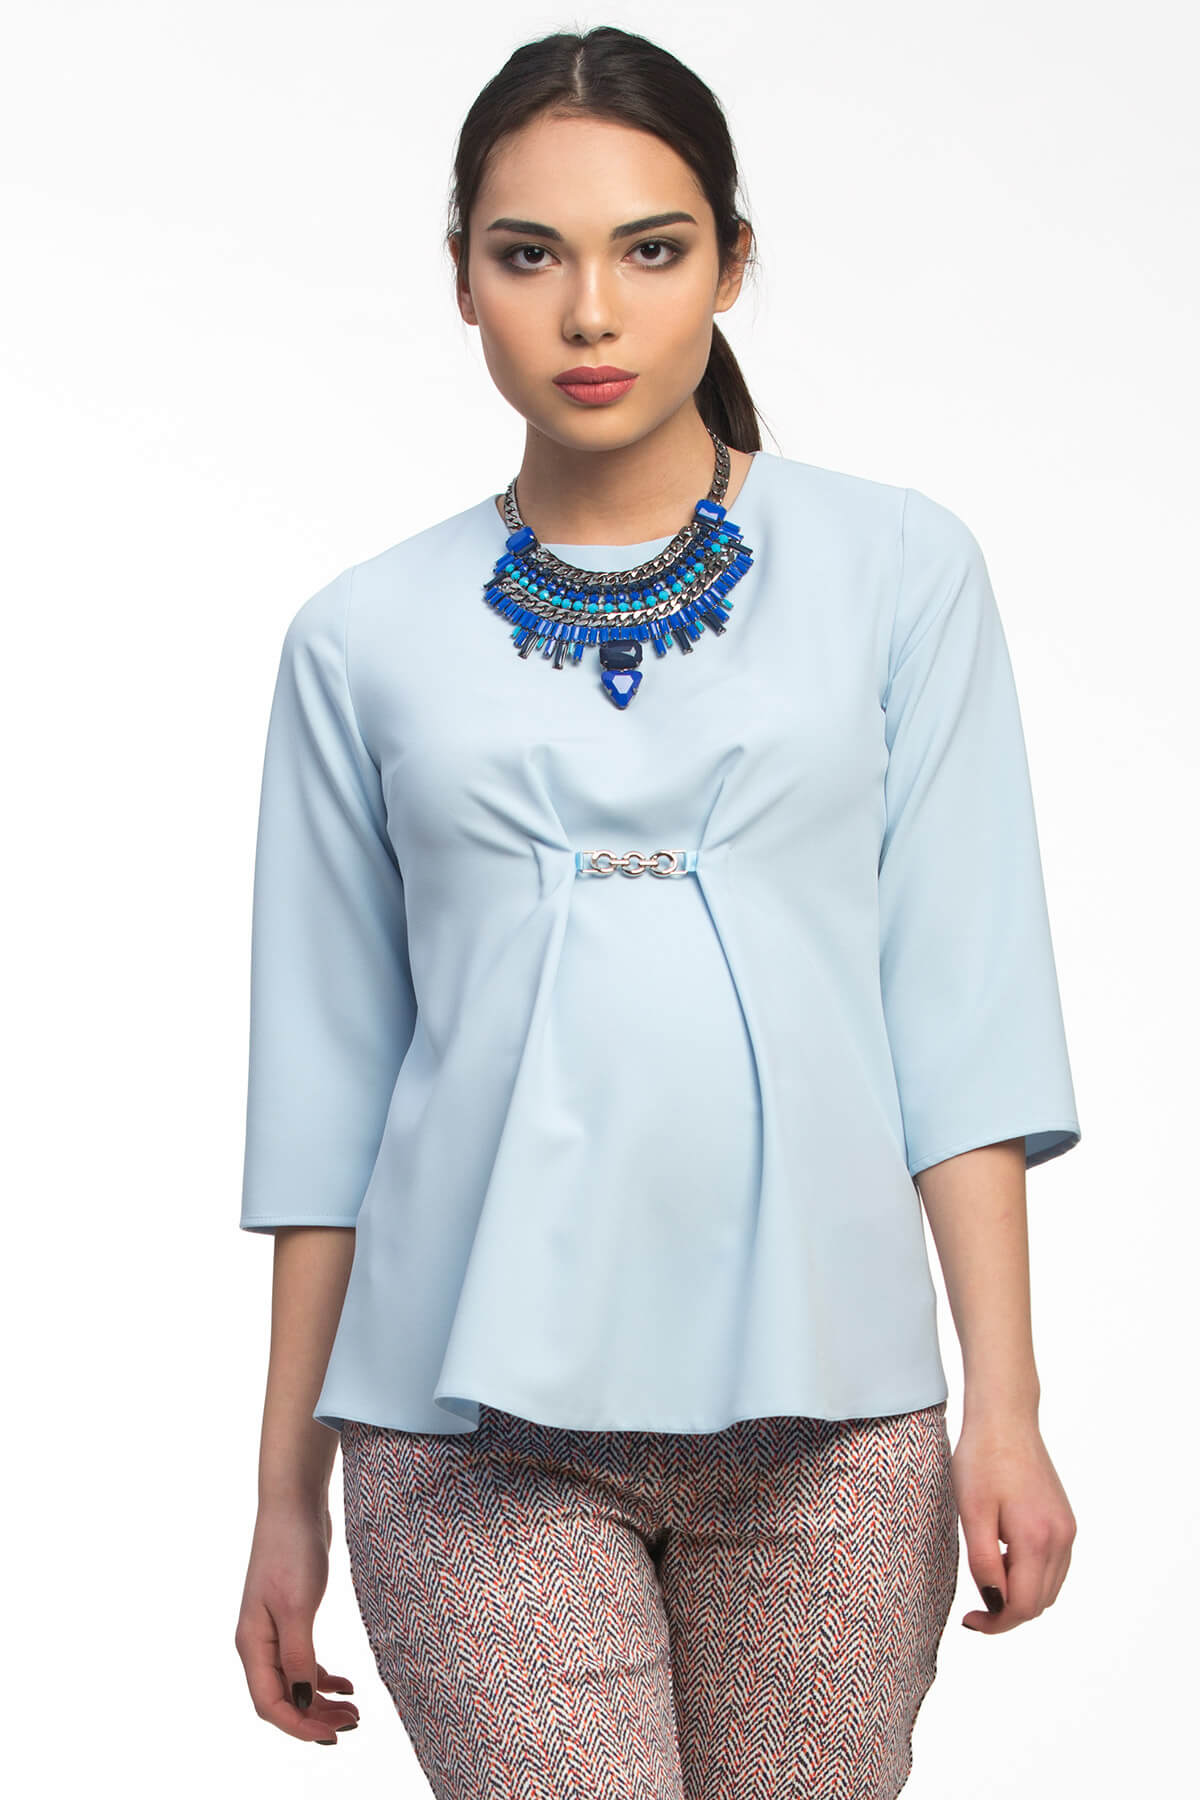 Блузка для беременных женская офисная летняя блуза кофта рубашка одежда будущих мам / Happy Moms